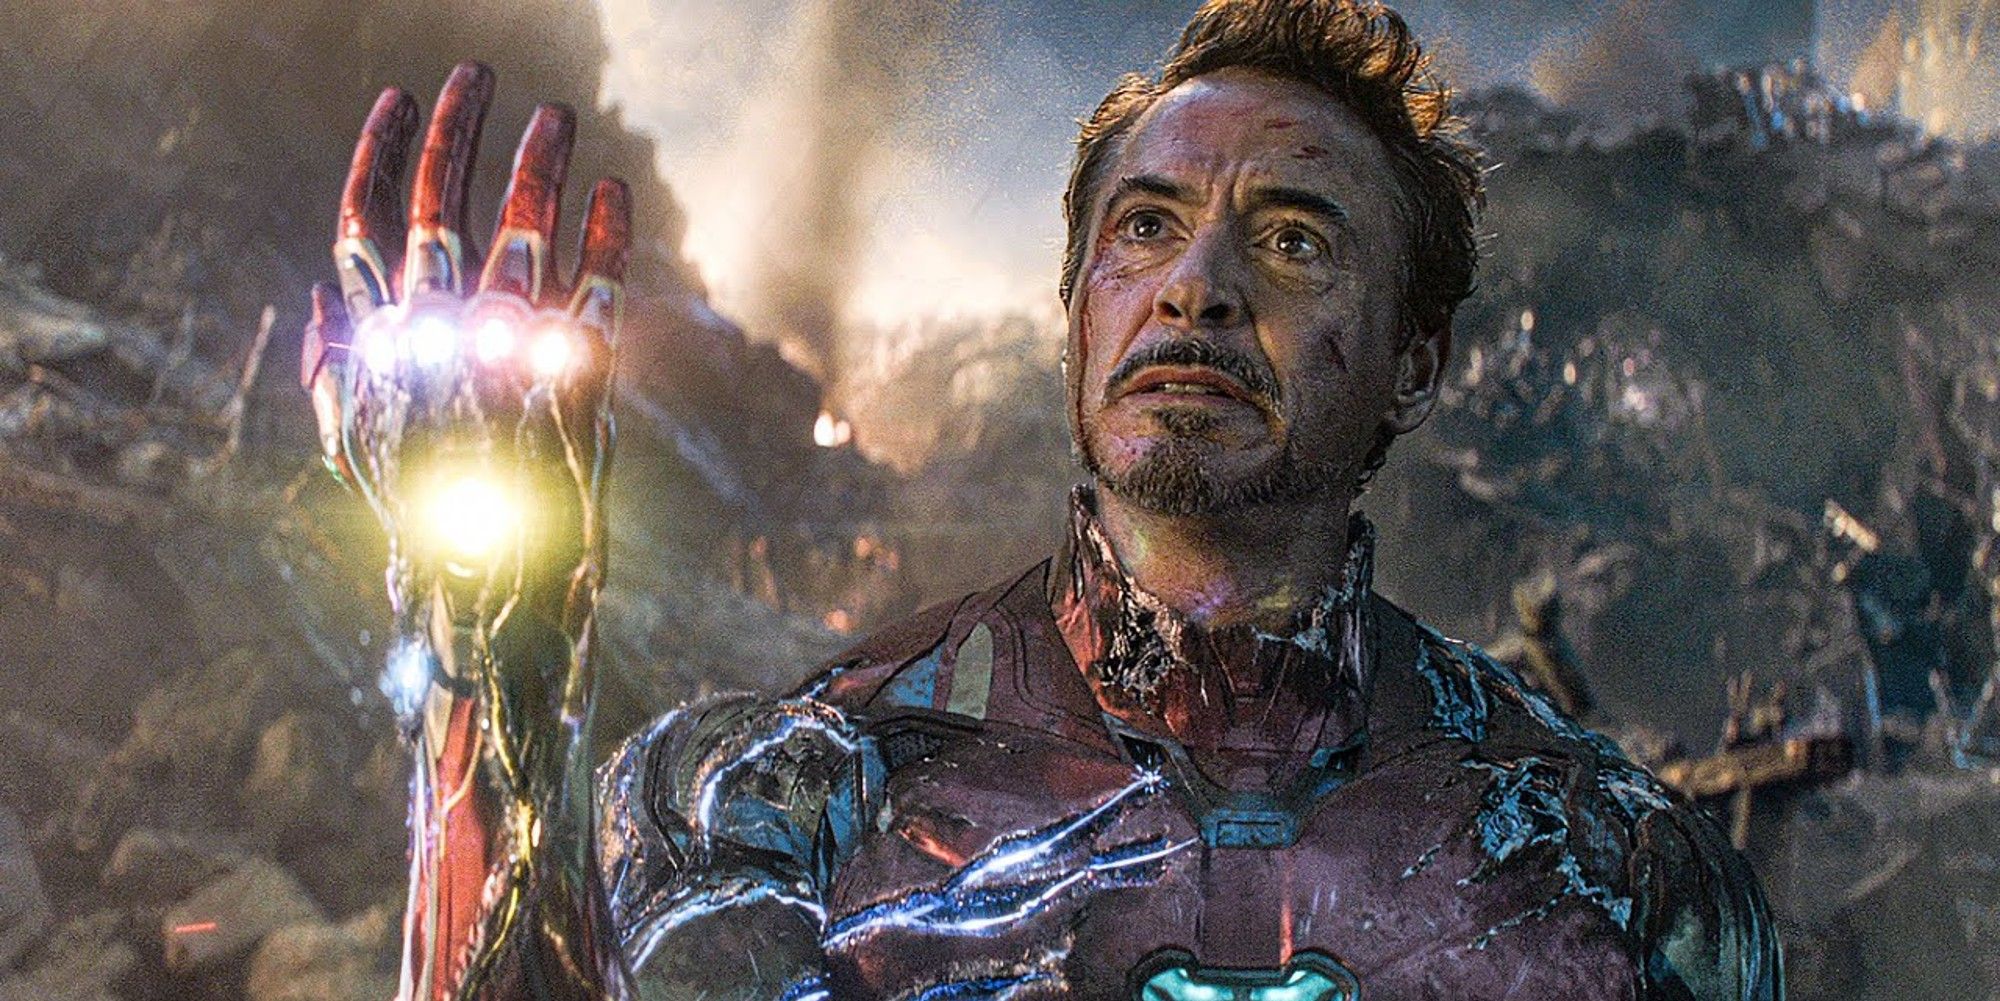 Marvels Avengers Leak Reveals Iron Man's Iconic Damaged Suit From Endgame